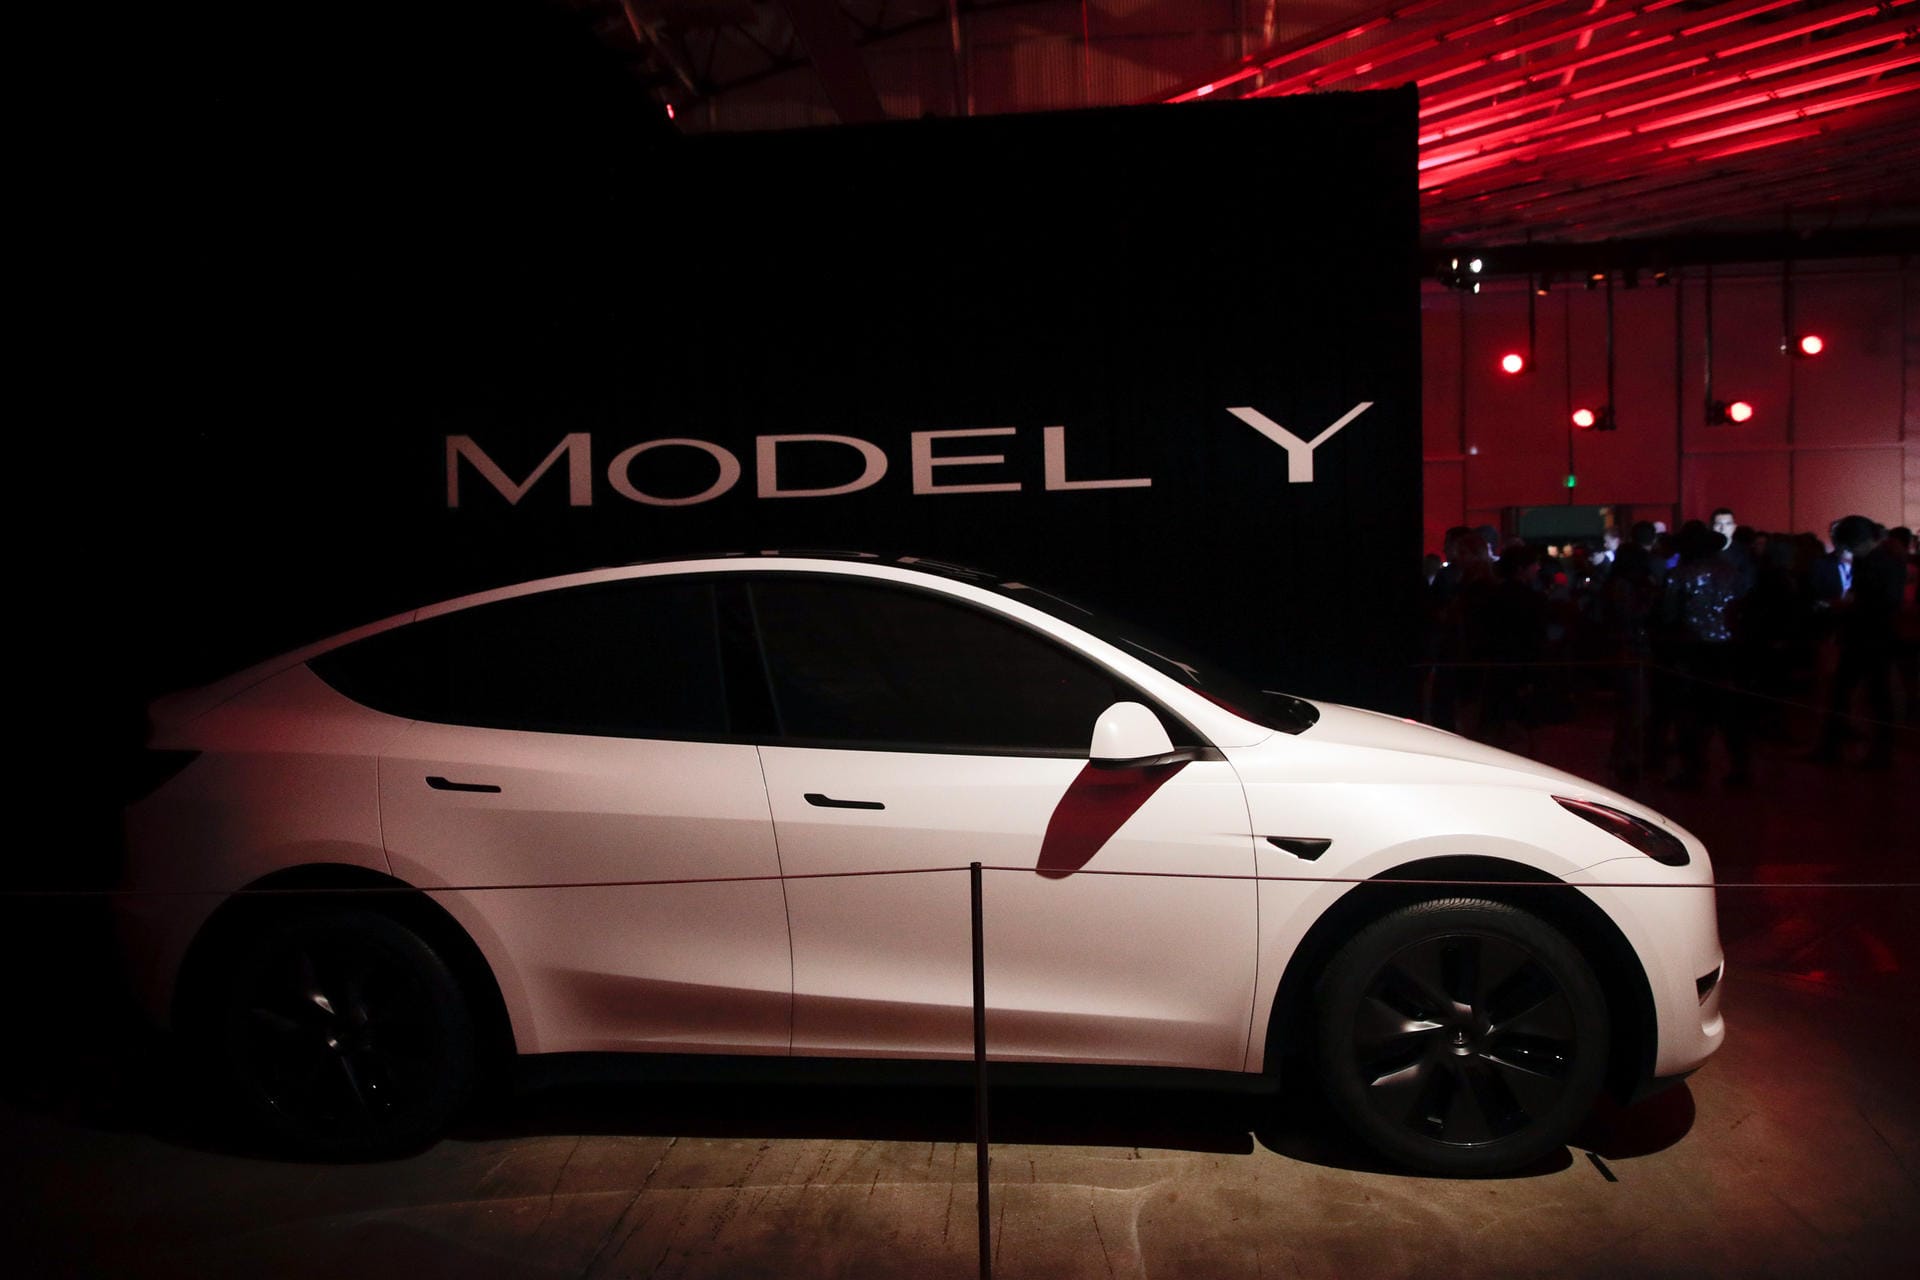 Preise des Tesla Model Y: In Deutschland wird es zunächst drei Varianten geben. Das sind die Langstreckenausführung mit 505 Kilometern Reichweite für 59.000 Euro; das Hochleistungsmodell „Performance“ mit dem besten Sprintwert und einer Höchstgeschwindigkeit von 241 km/h ab 67.000 Euro sowie das vorläufige Einstiegsmodell mit der größten Reichweite (540 Kilometern) für mindestens 55.000 Euro.